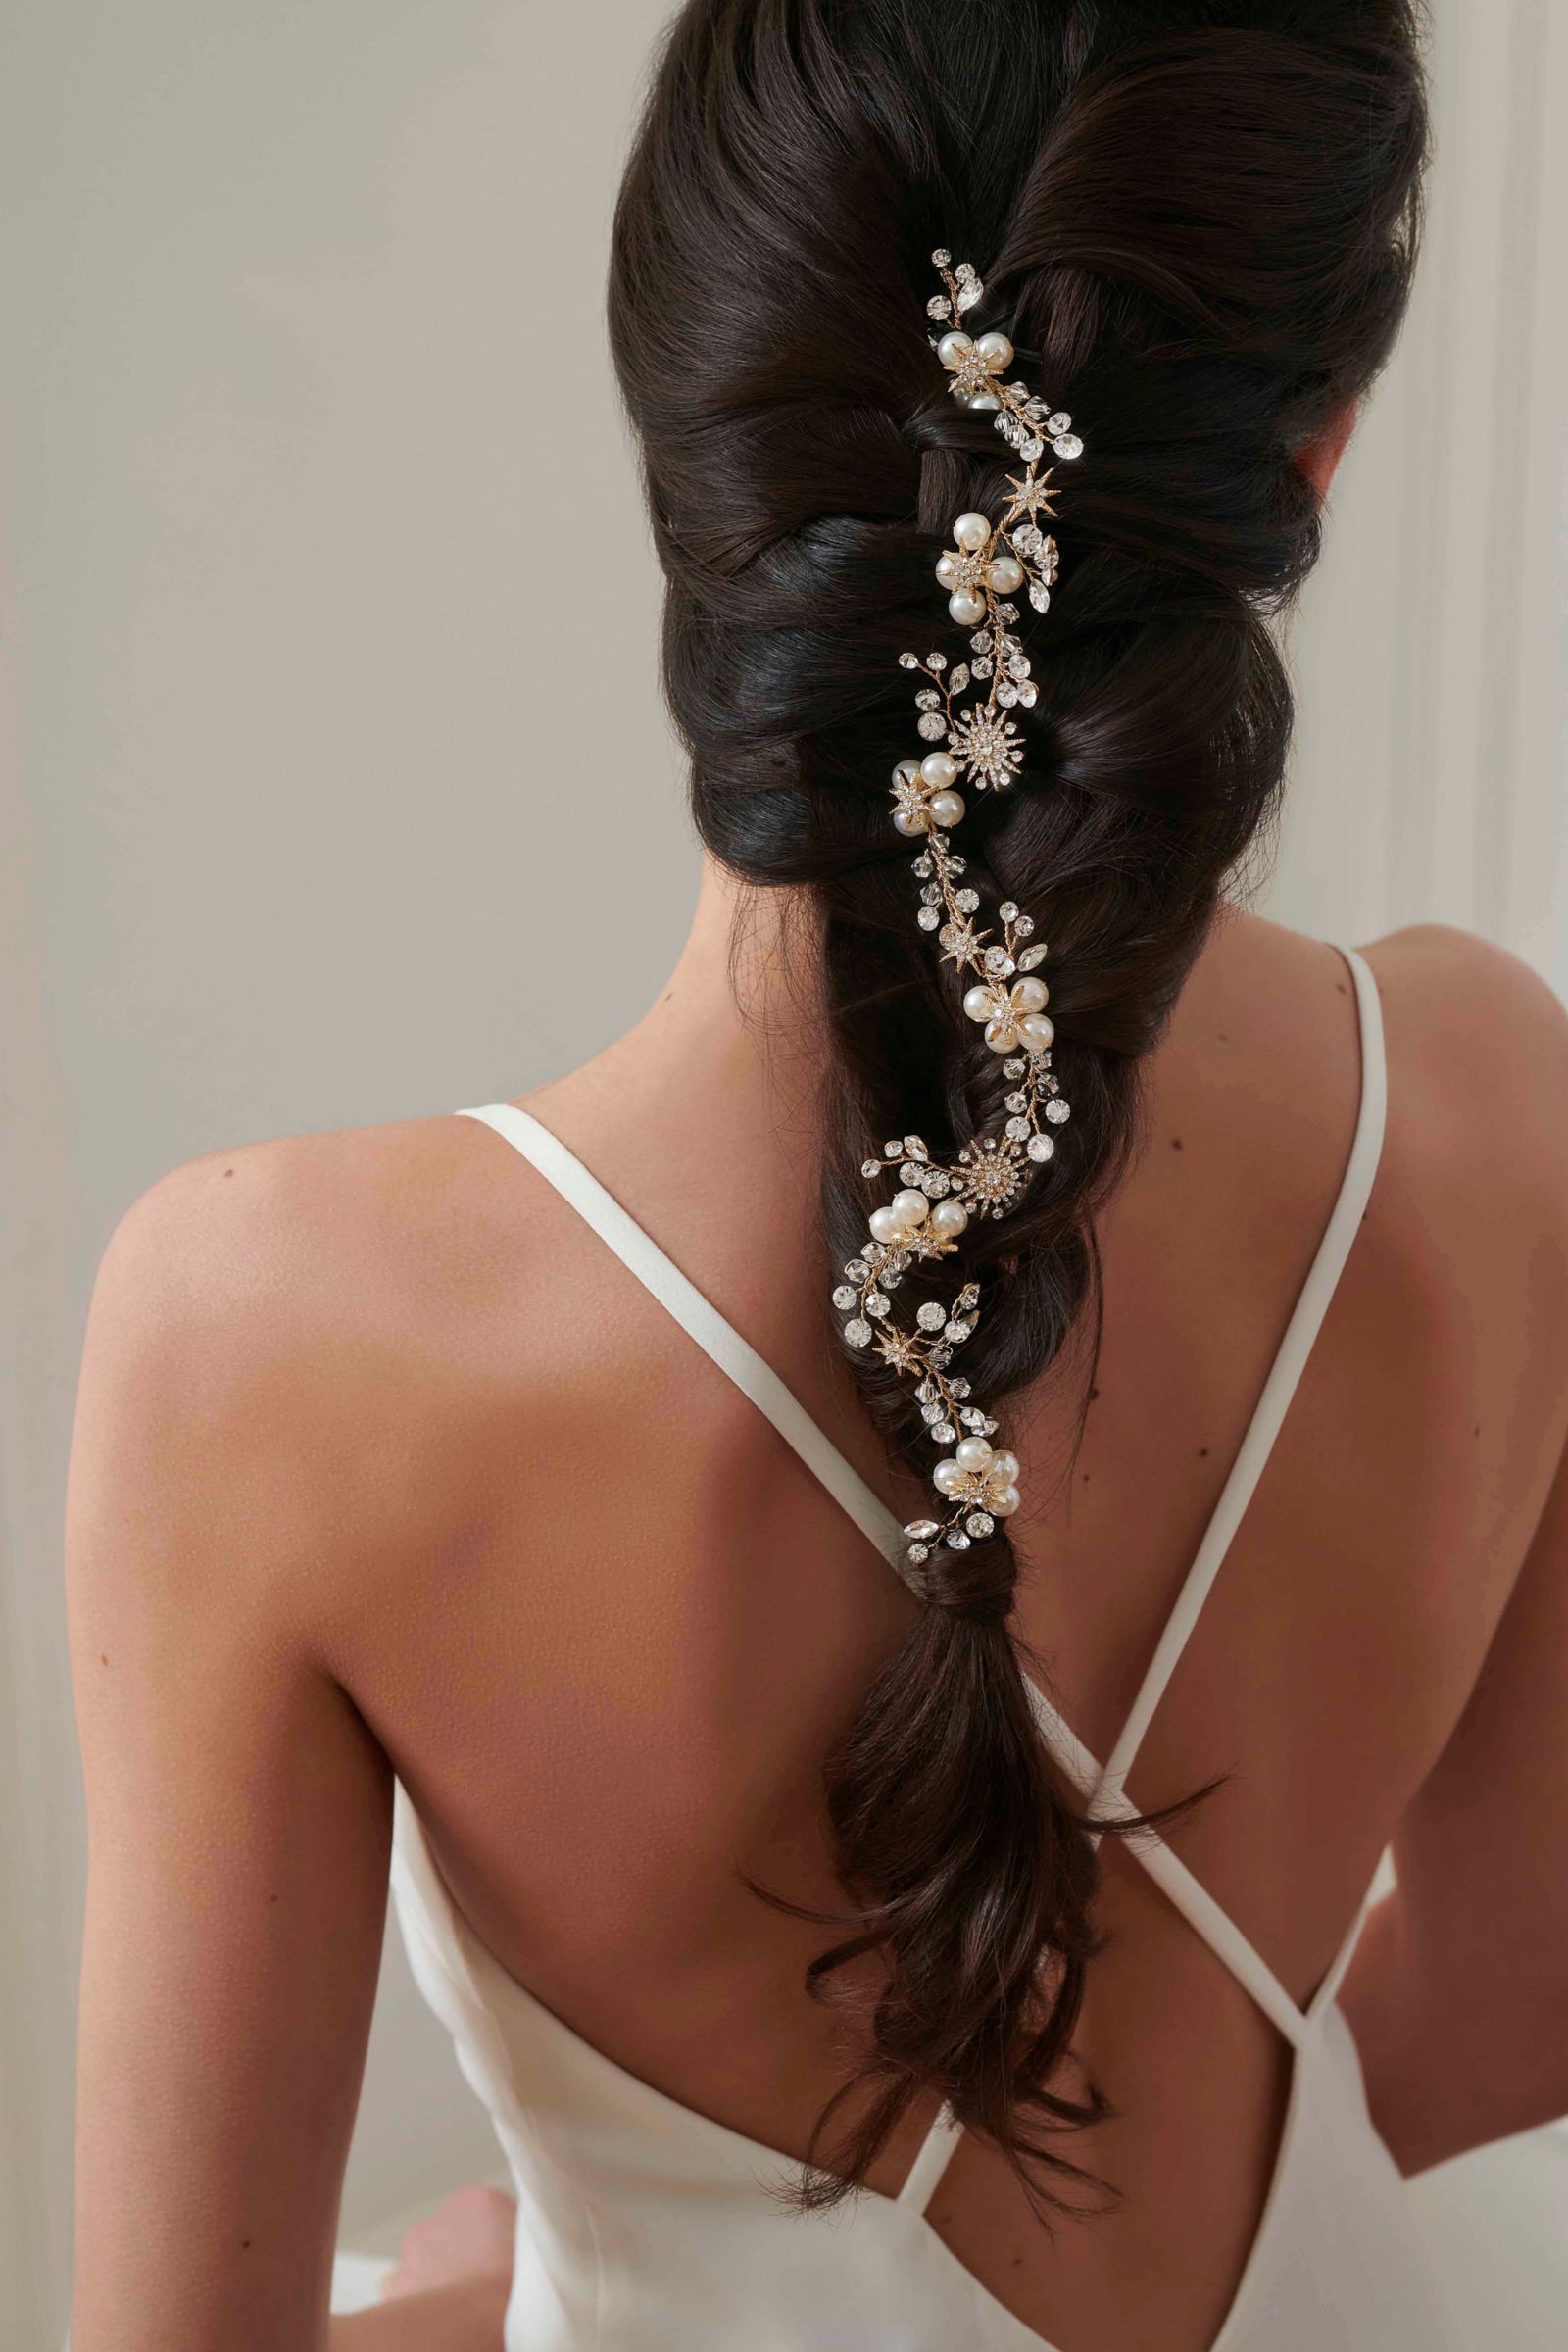 Bridal Veils & Hair Accessories